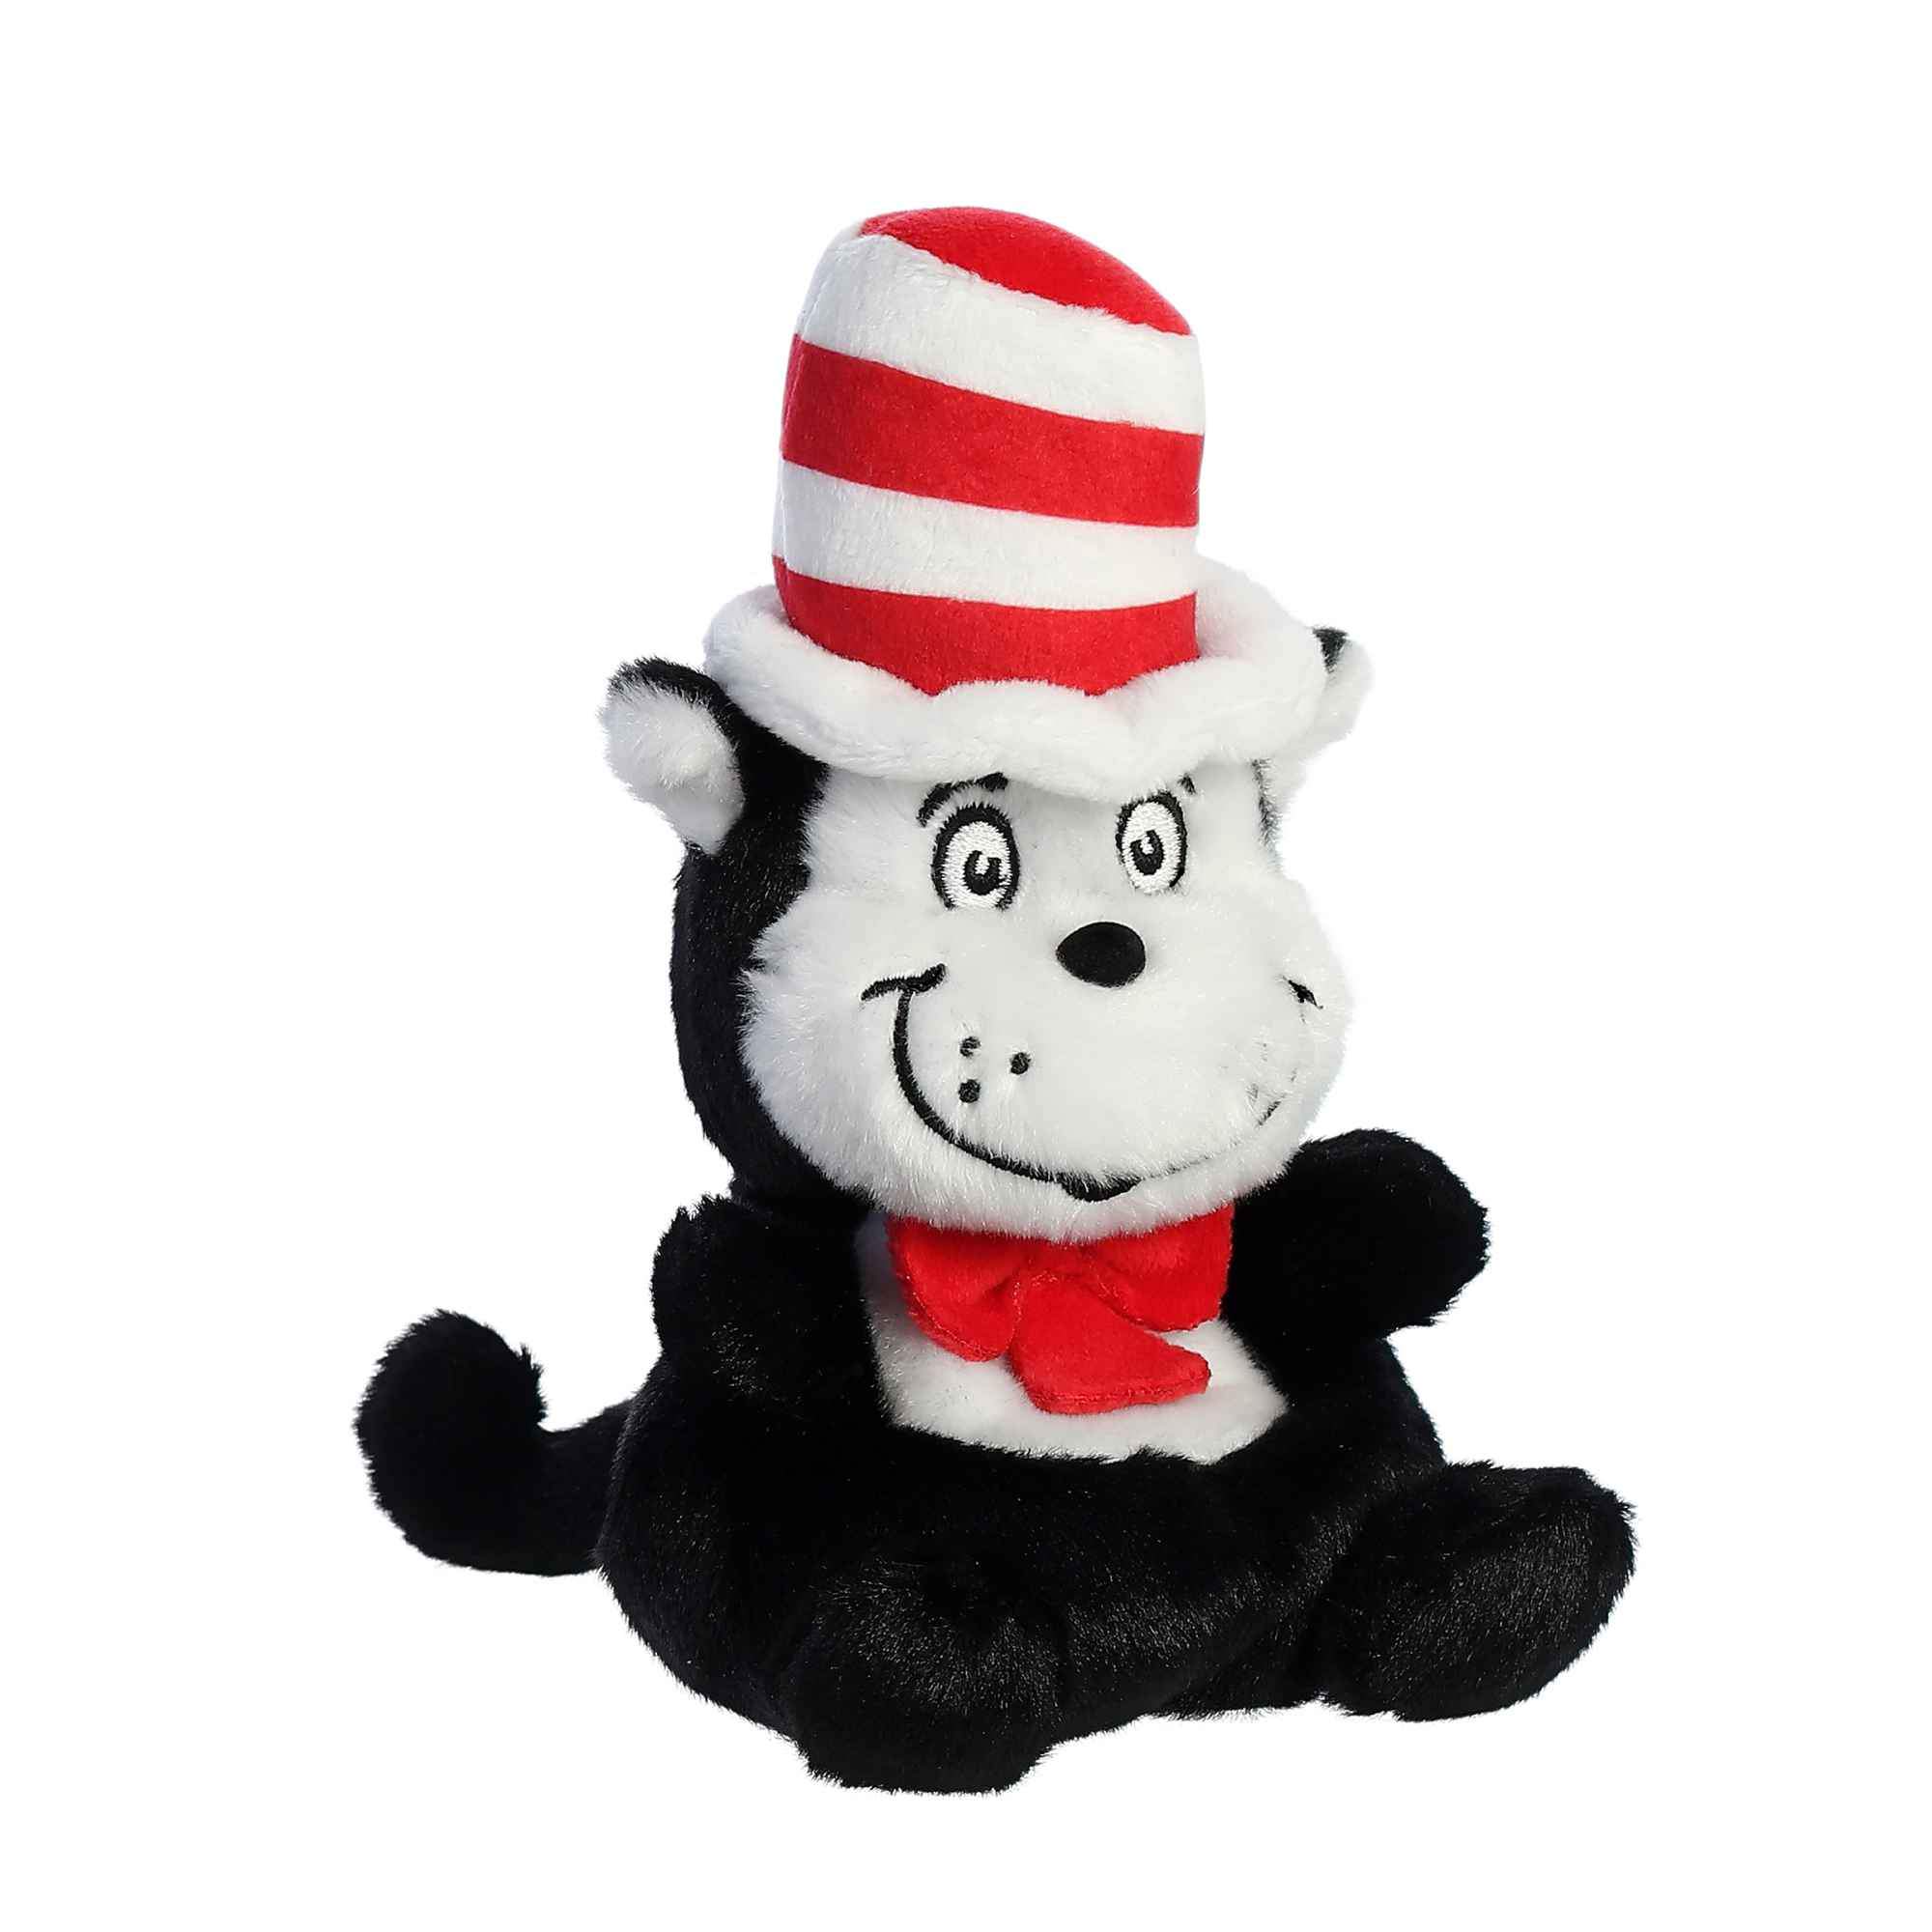 Dr. Seuss - El gato en el sombrero™